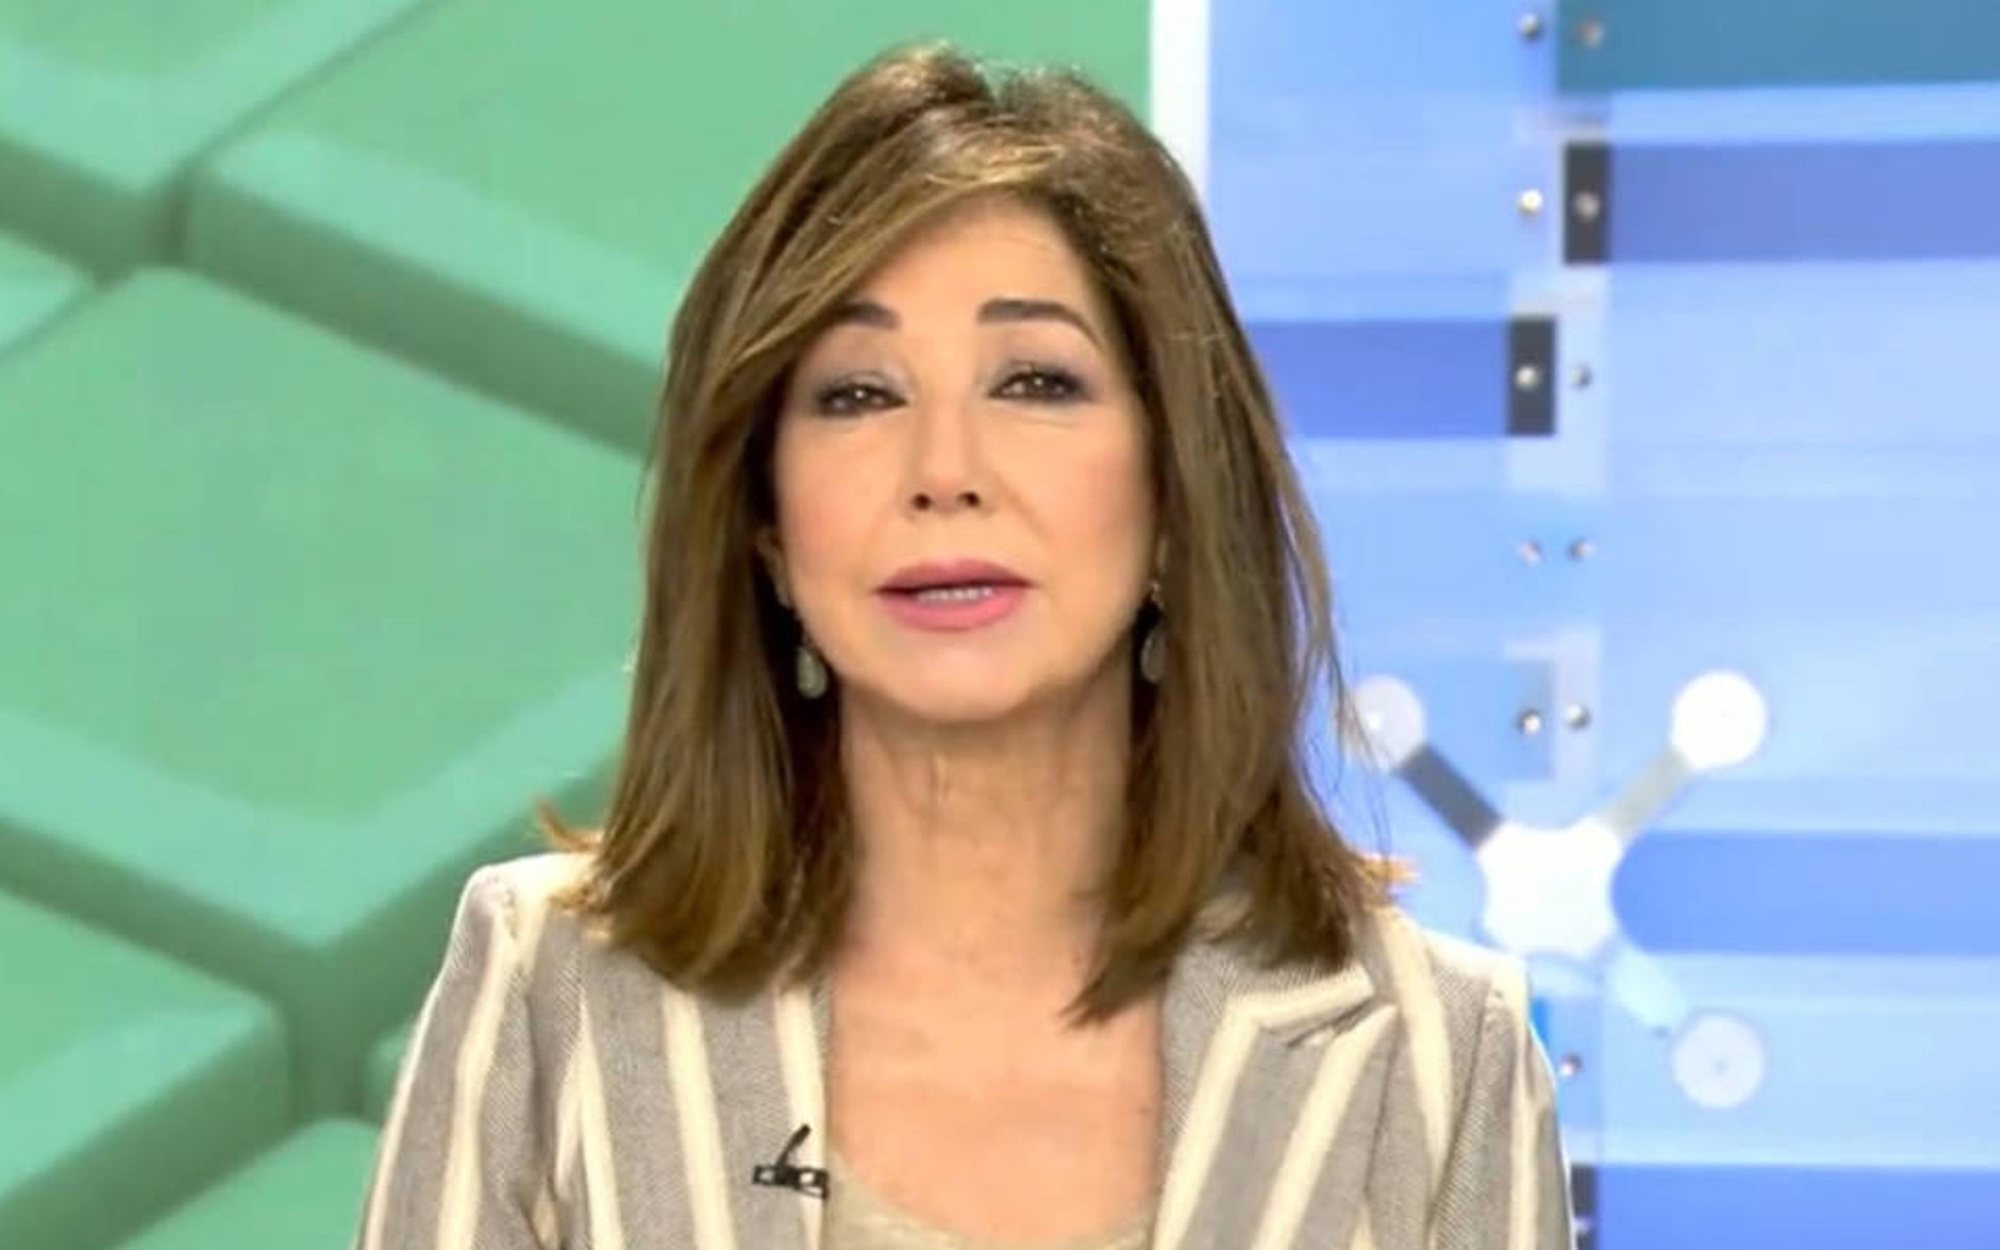 Ana Rosa Quintana critica al Gobierno tras las amenazas de muerte recibidas: "Ni con 900 muertos lloraban"